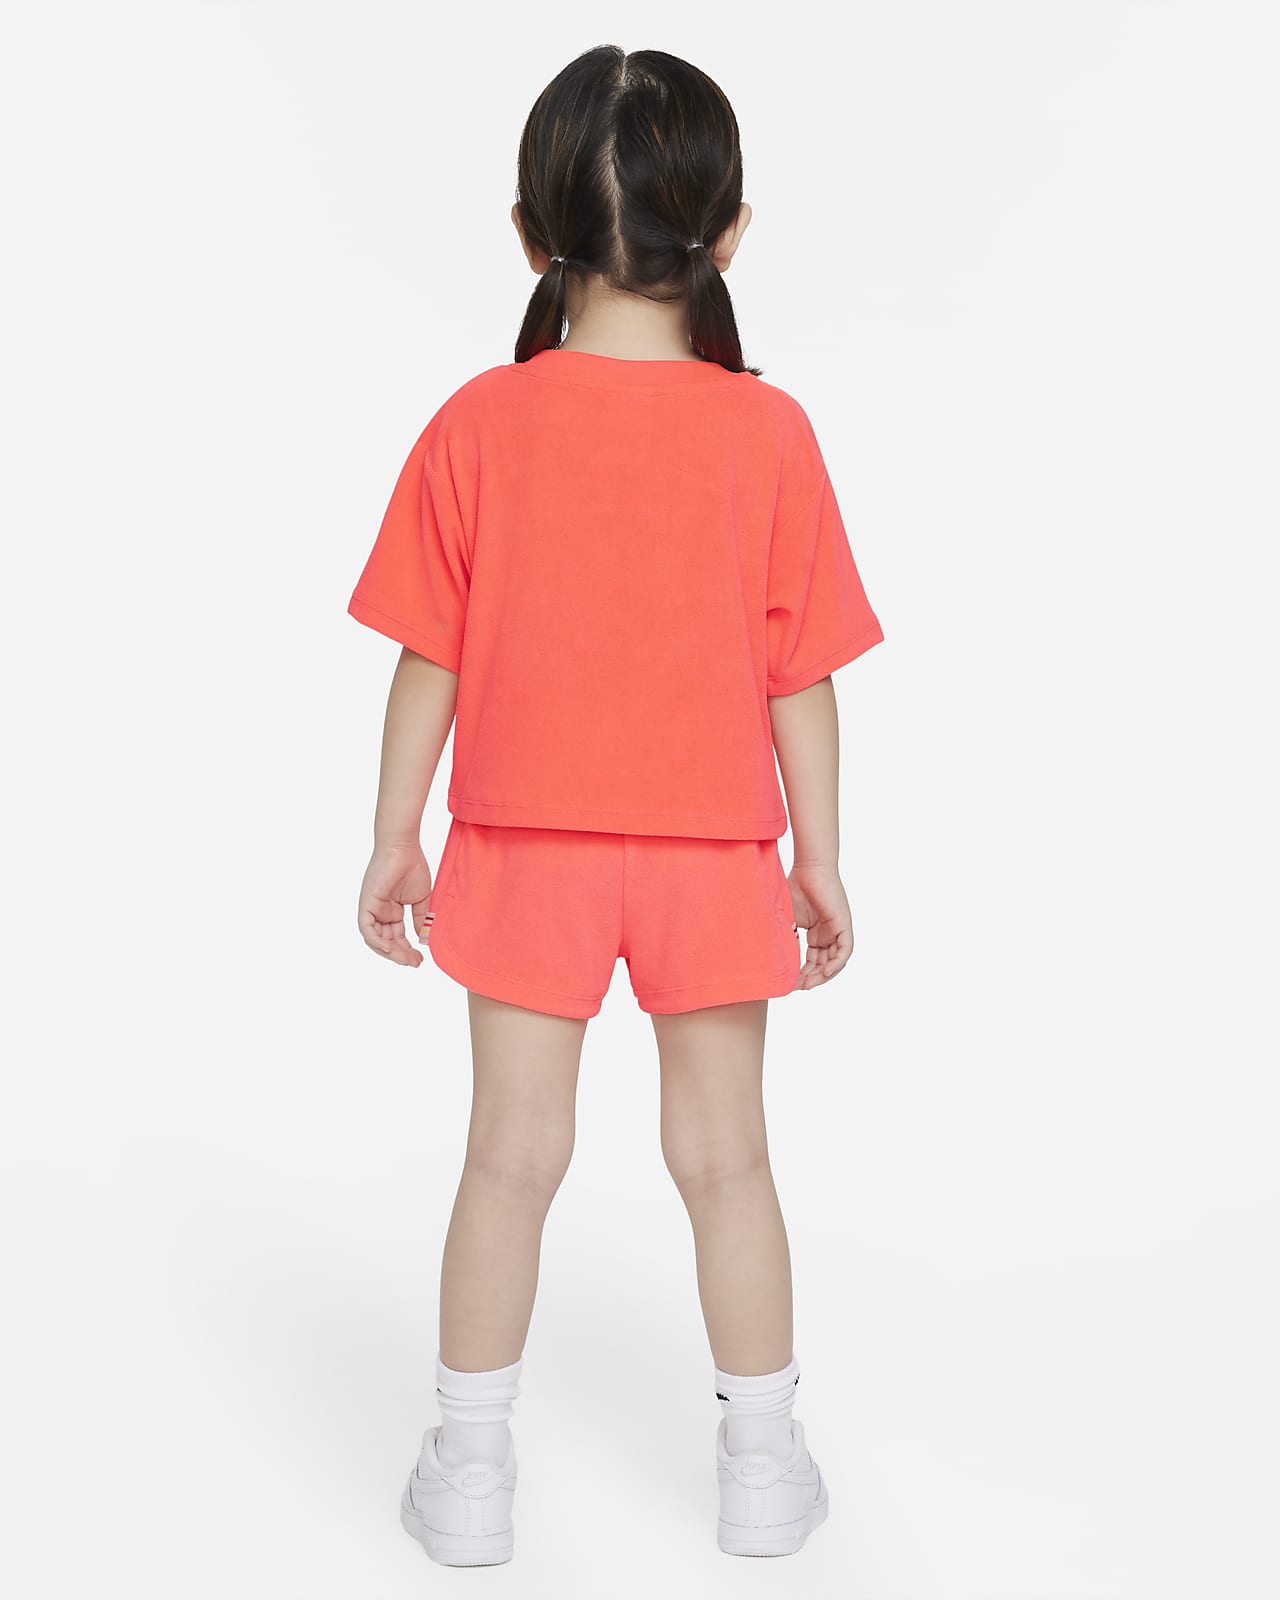 Nike Toddler T-Shirt and Shorts Set. Nike LU